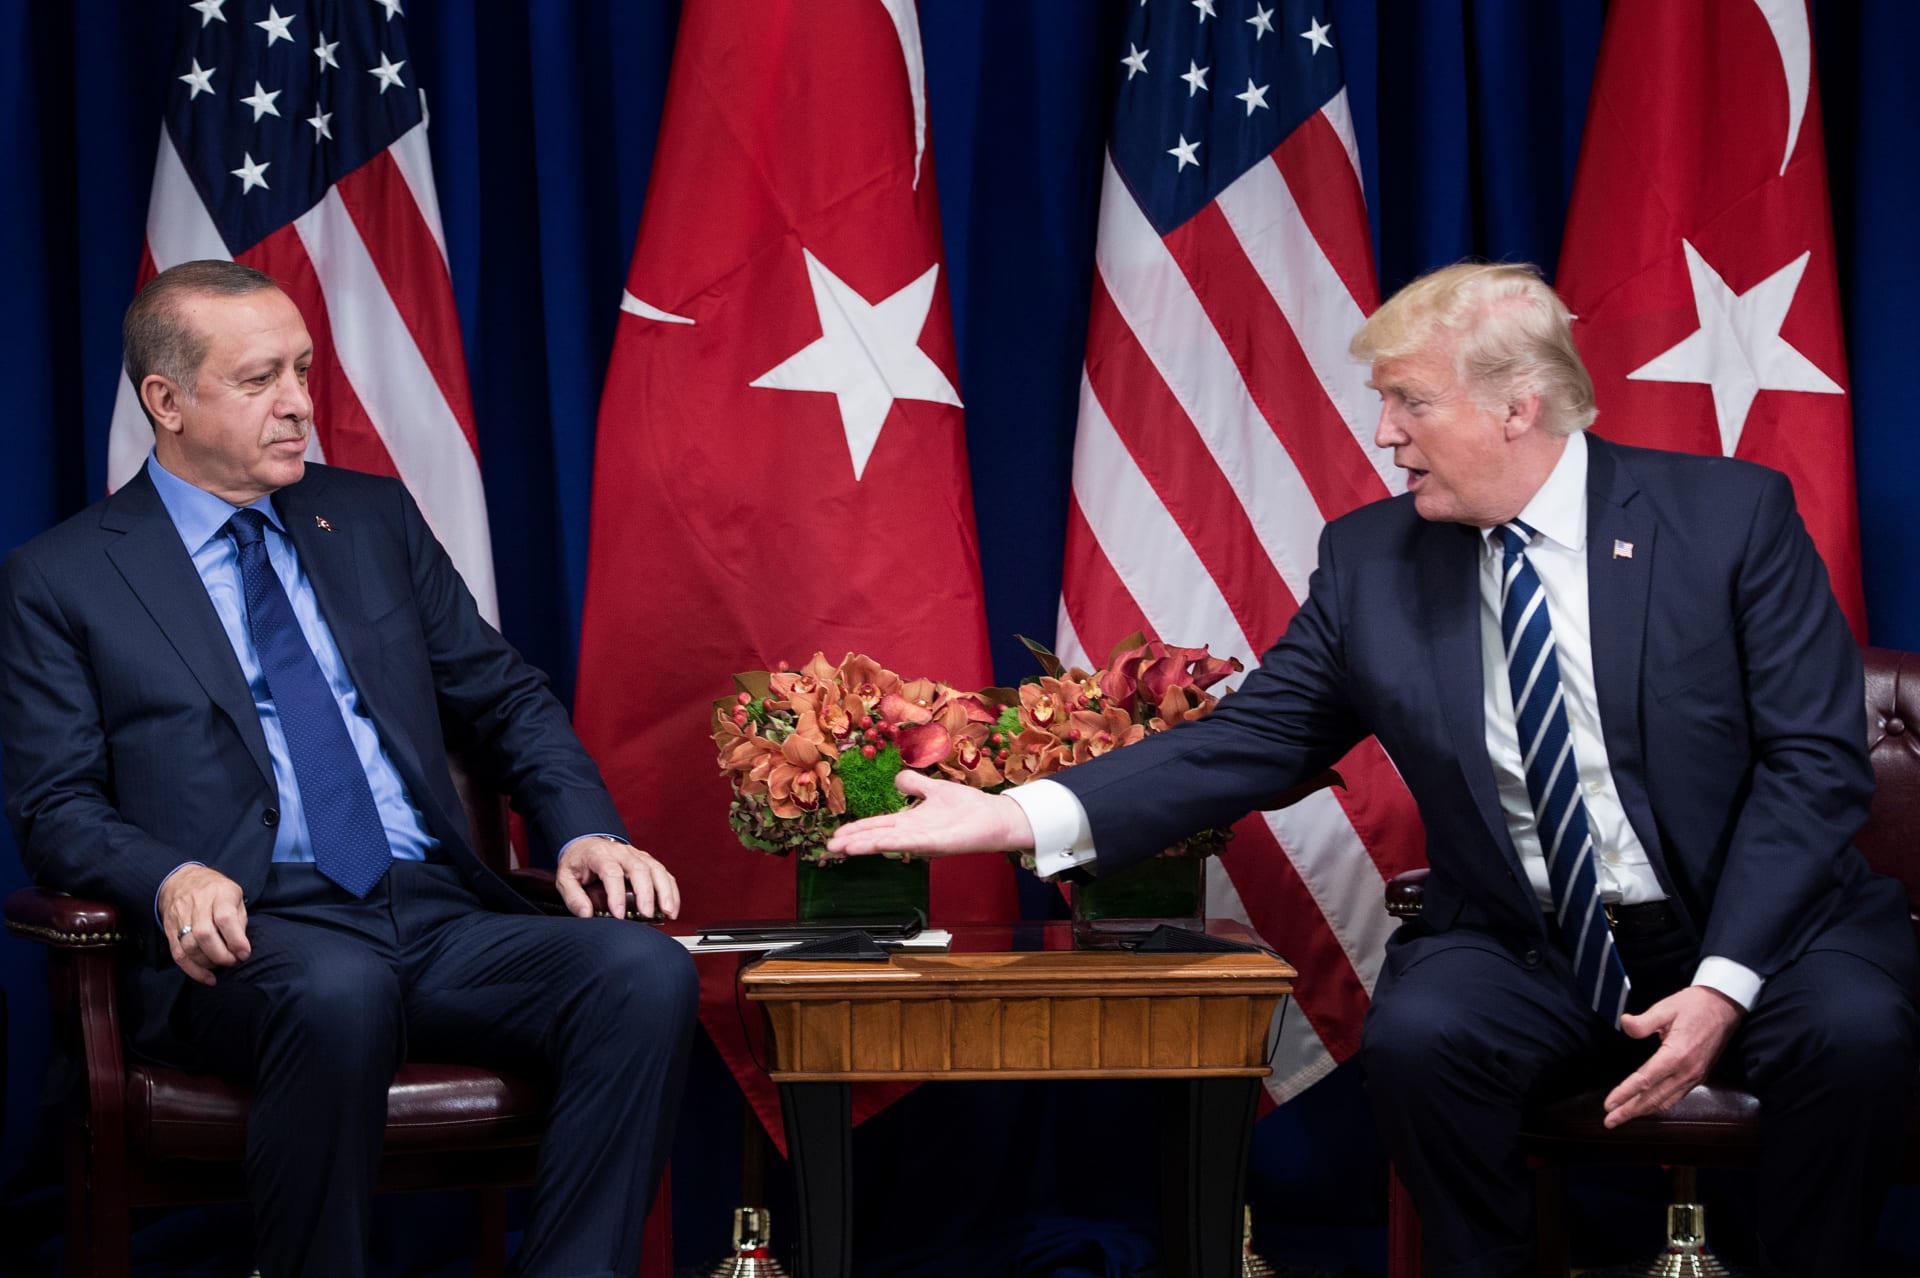 ترامب يهدد تركيا بـ"عقوبات كبرى".. وأنقرة: لن نتسامح مع التهديدات